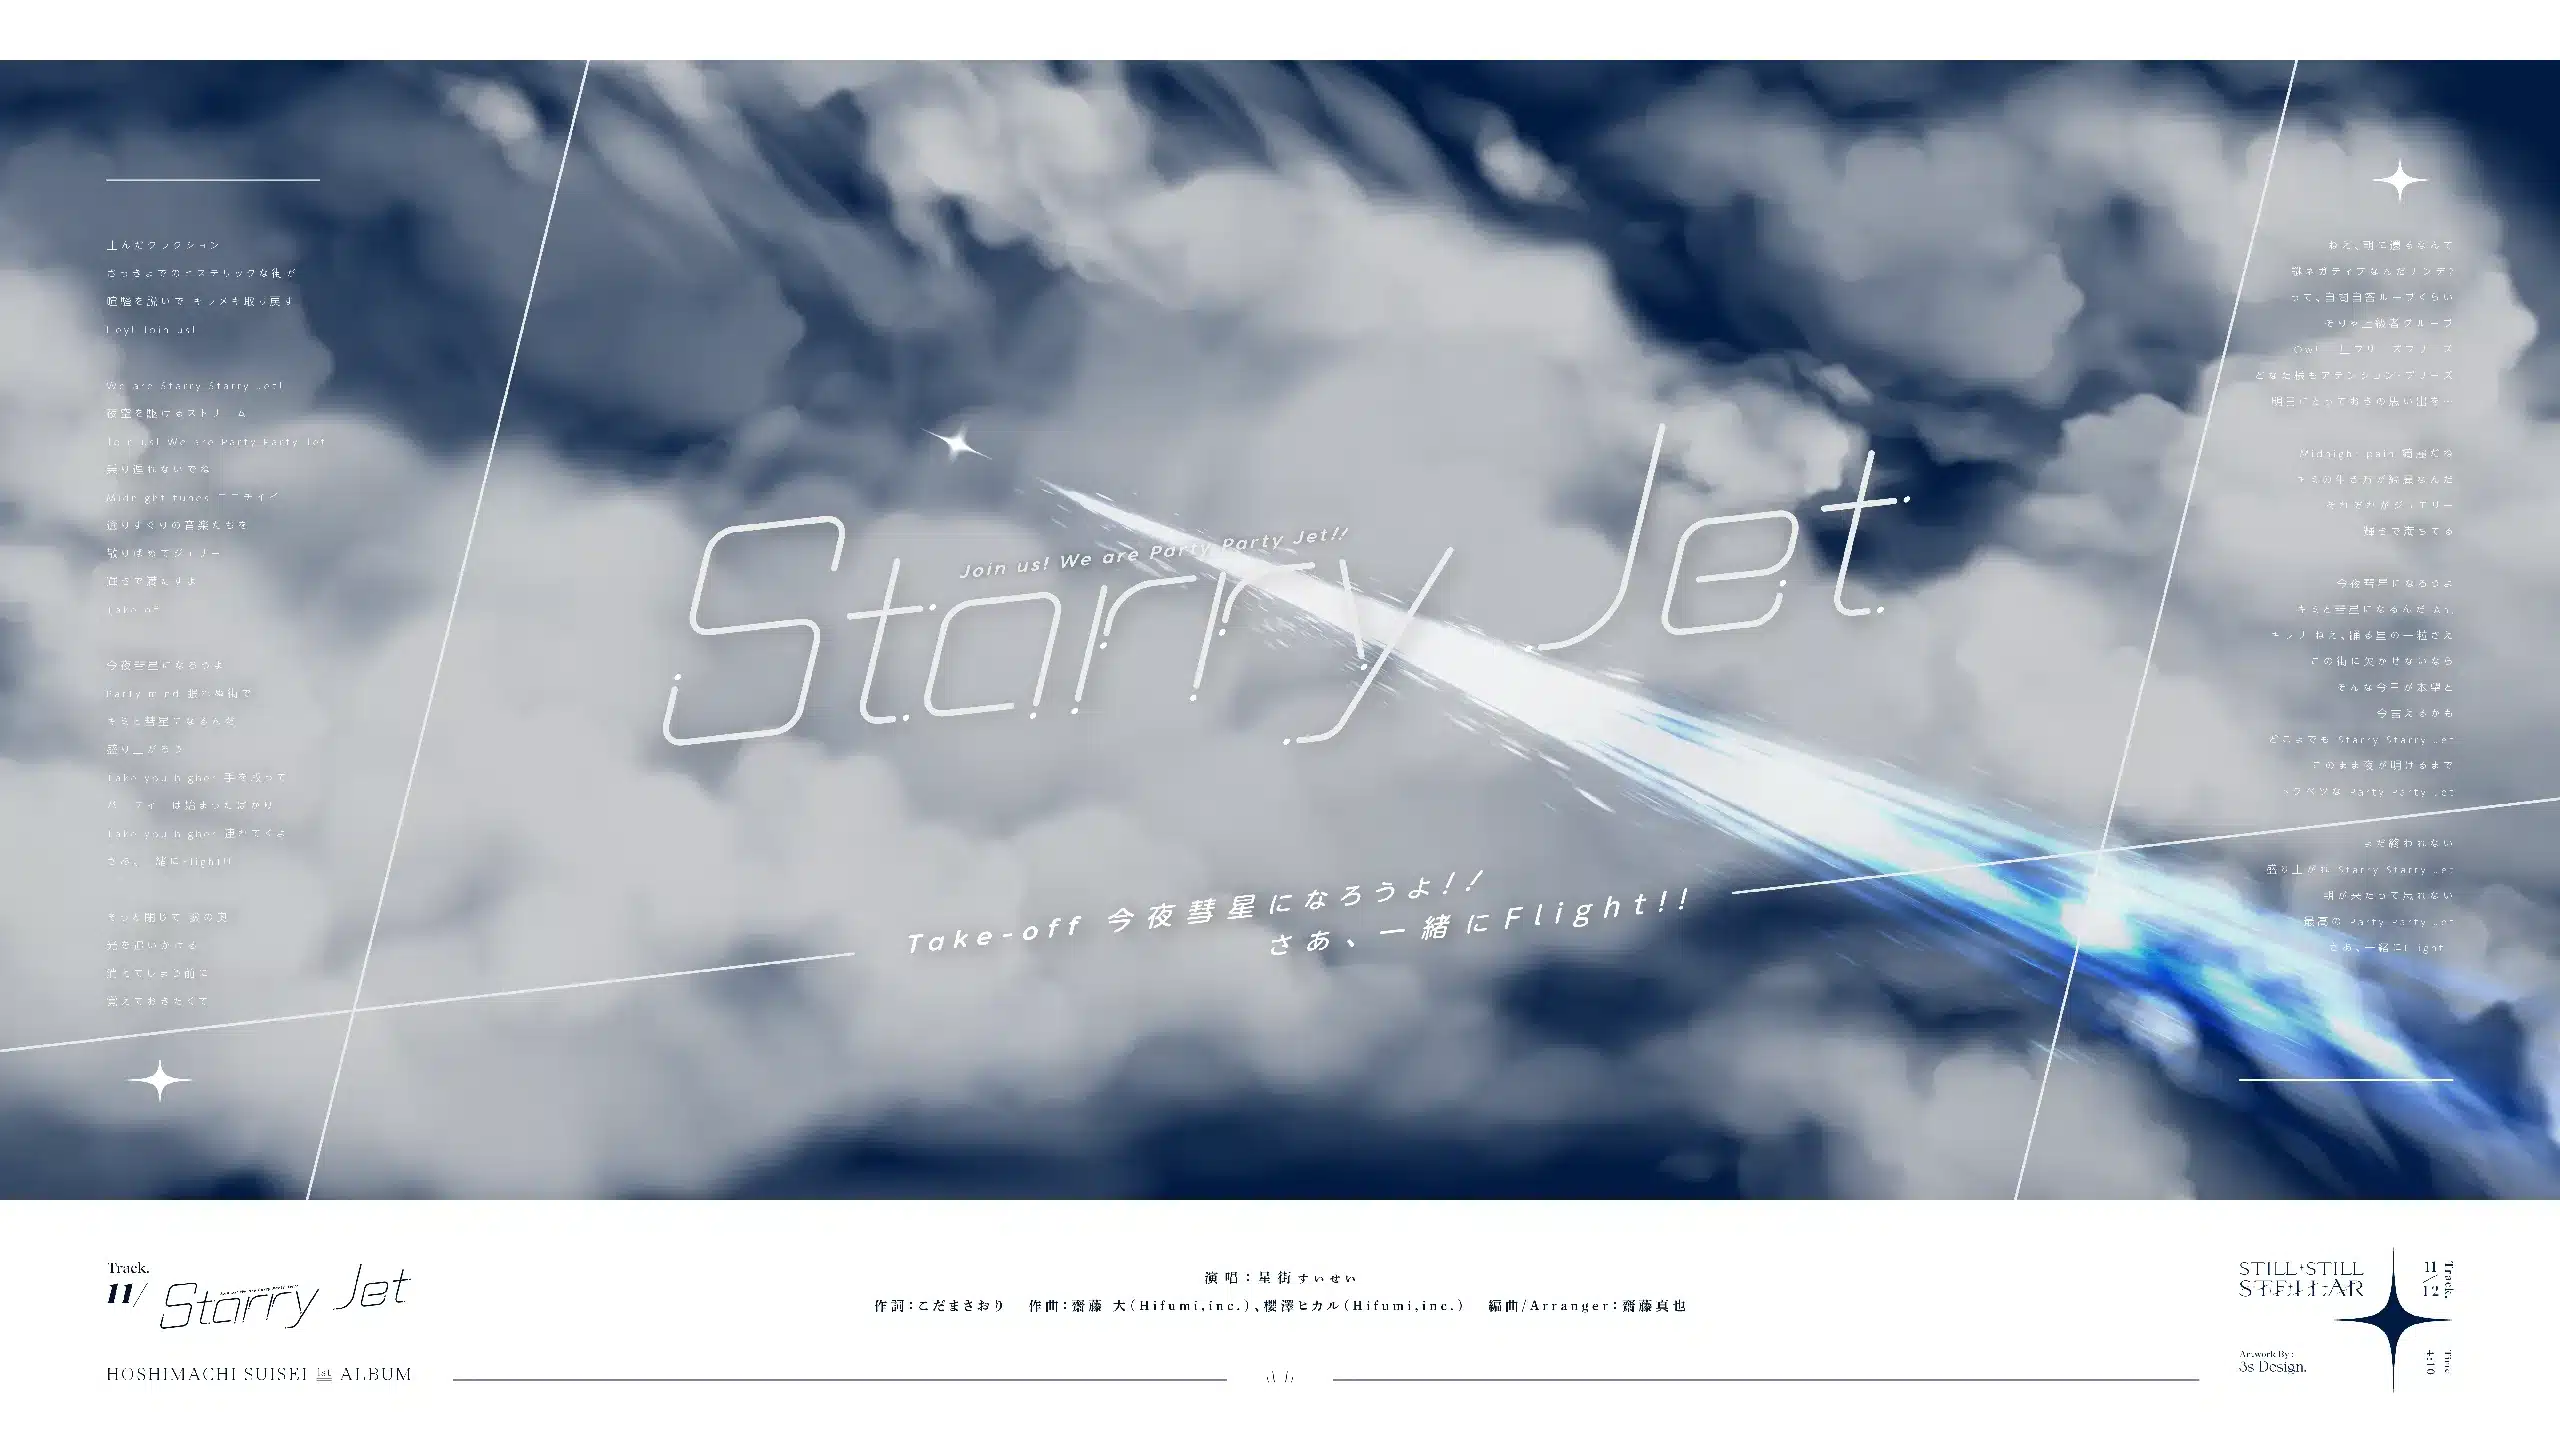 11-Starry-Jet-v1.3-CROP_01-FHD_2560x